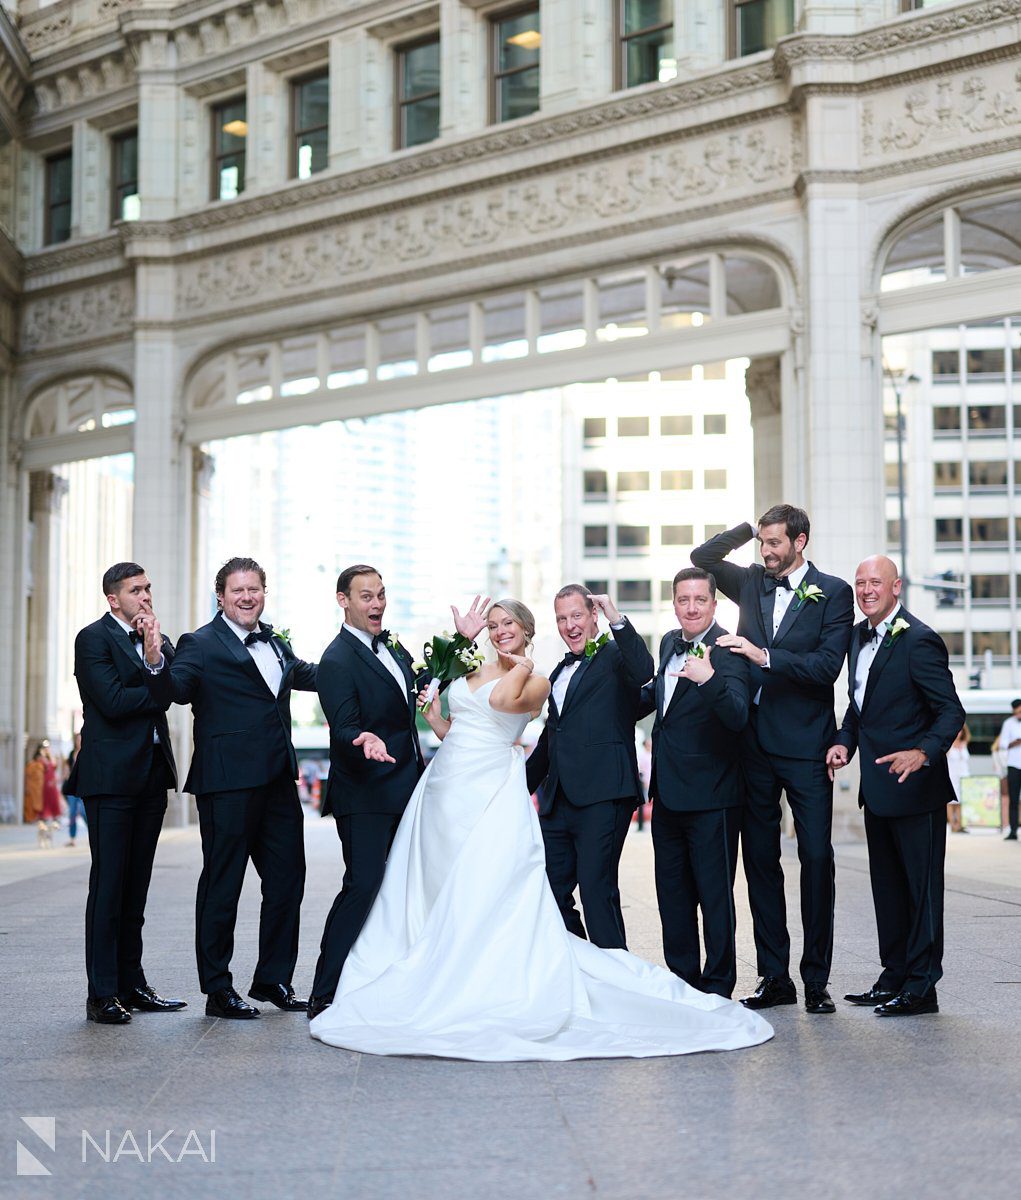 Michigan Ave chicago wedding photos 